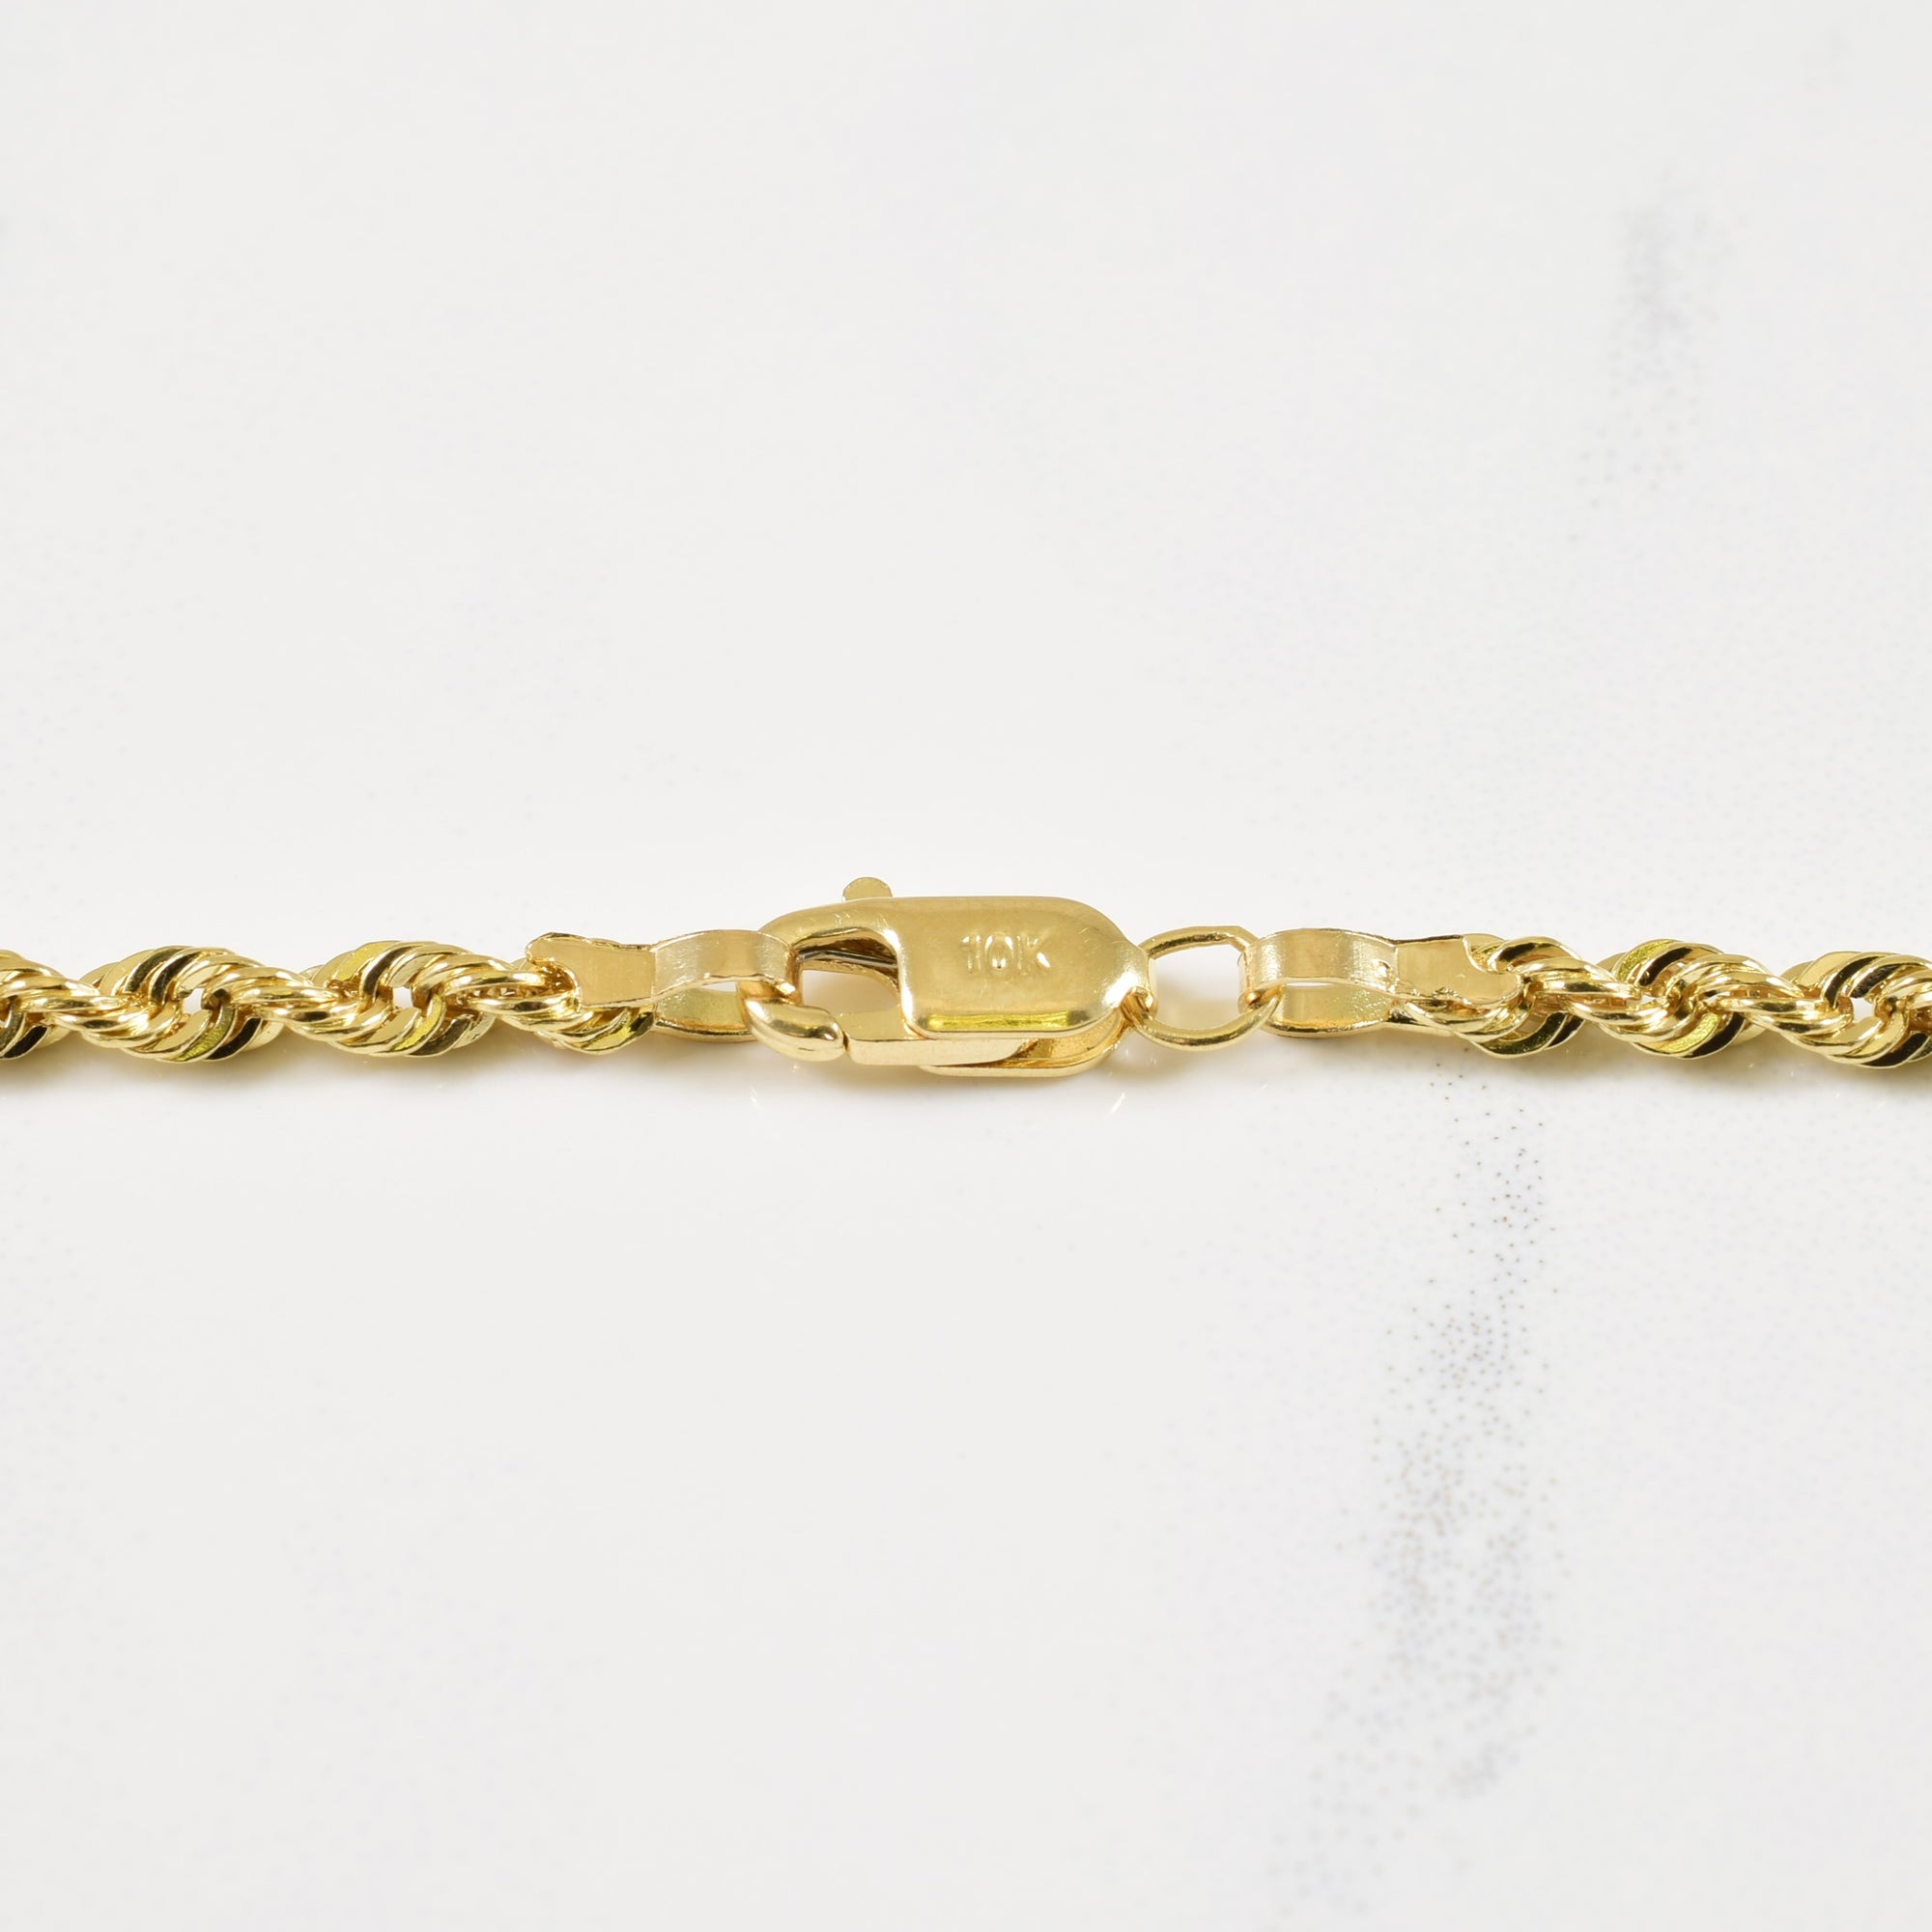 10k Yellow Gold Rope Chain | 24